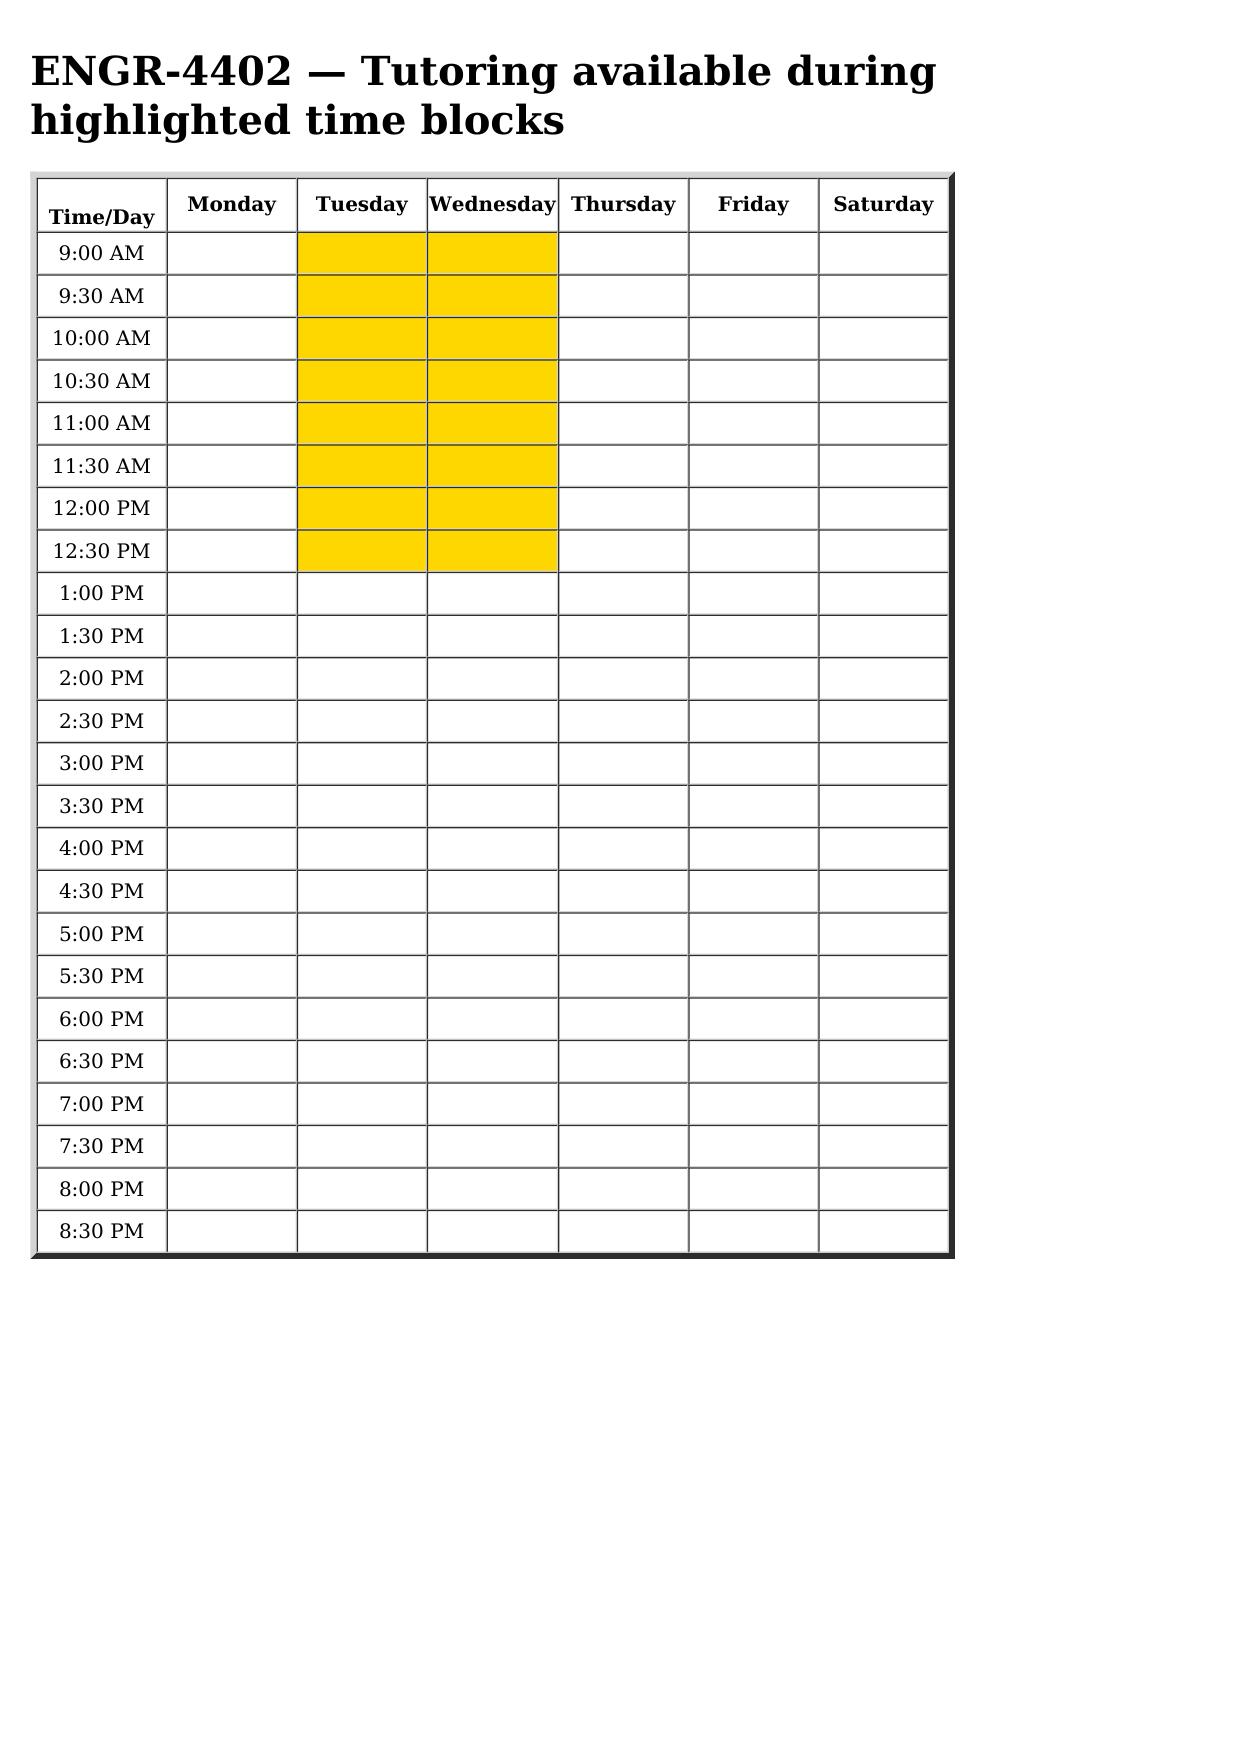 engr 4402 schedule